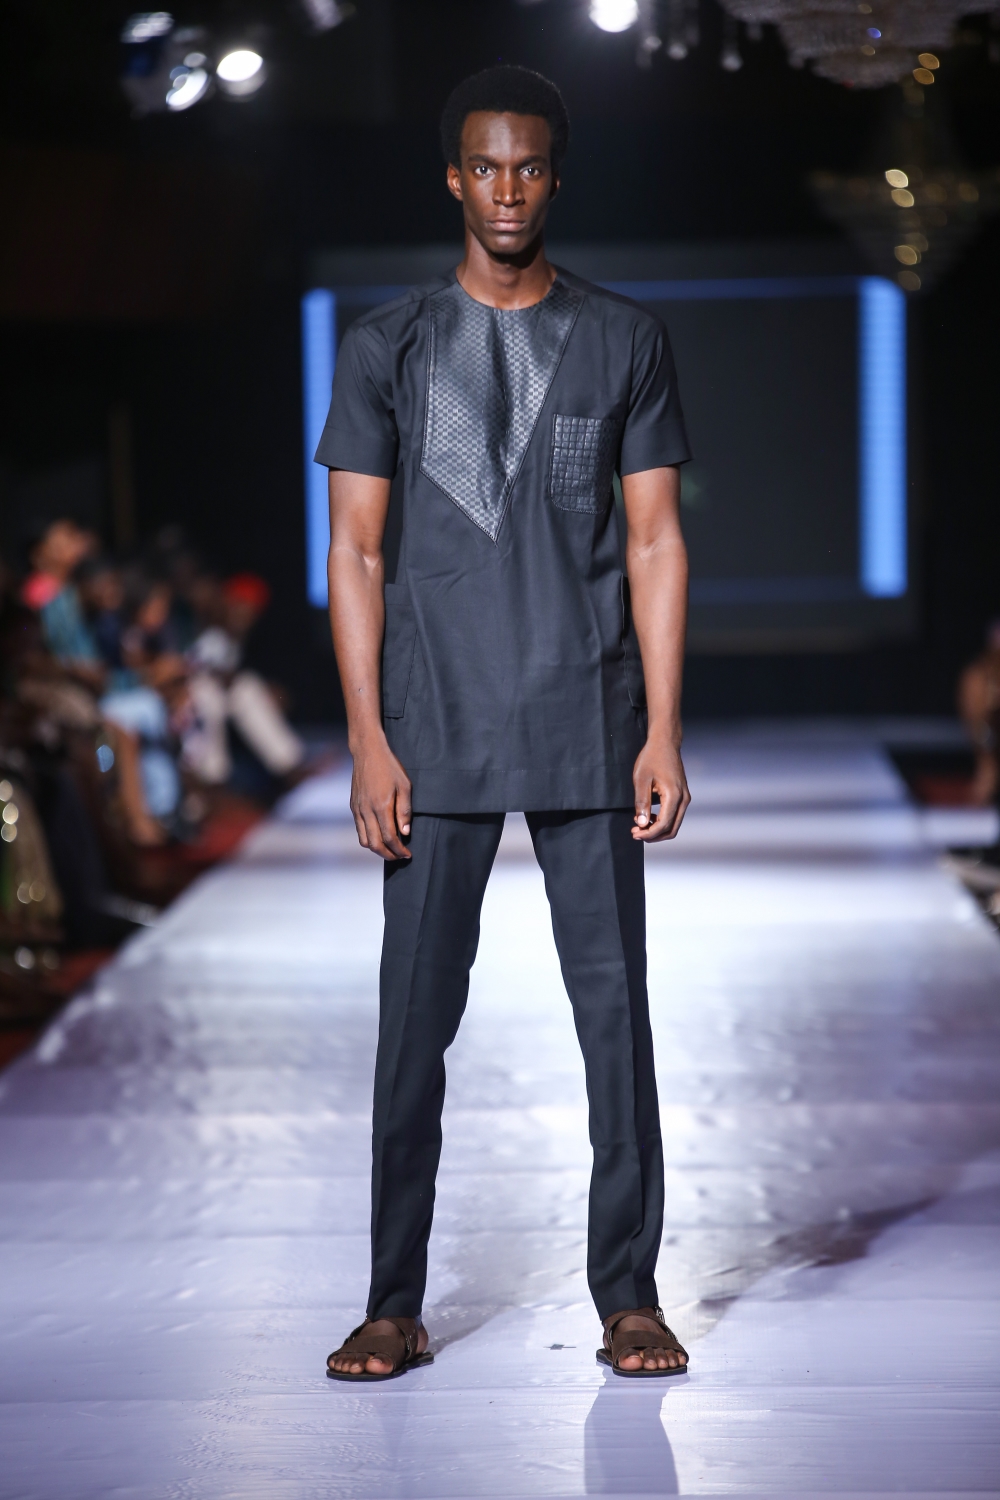 #AFWN17 | Africa Fashion Week Nigeria Day 1: Marobuk